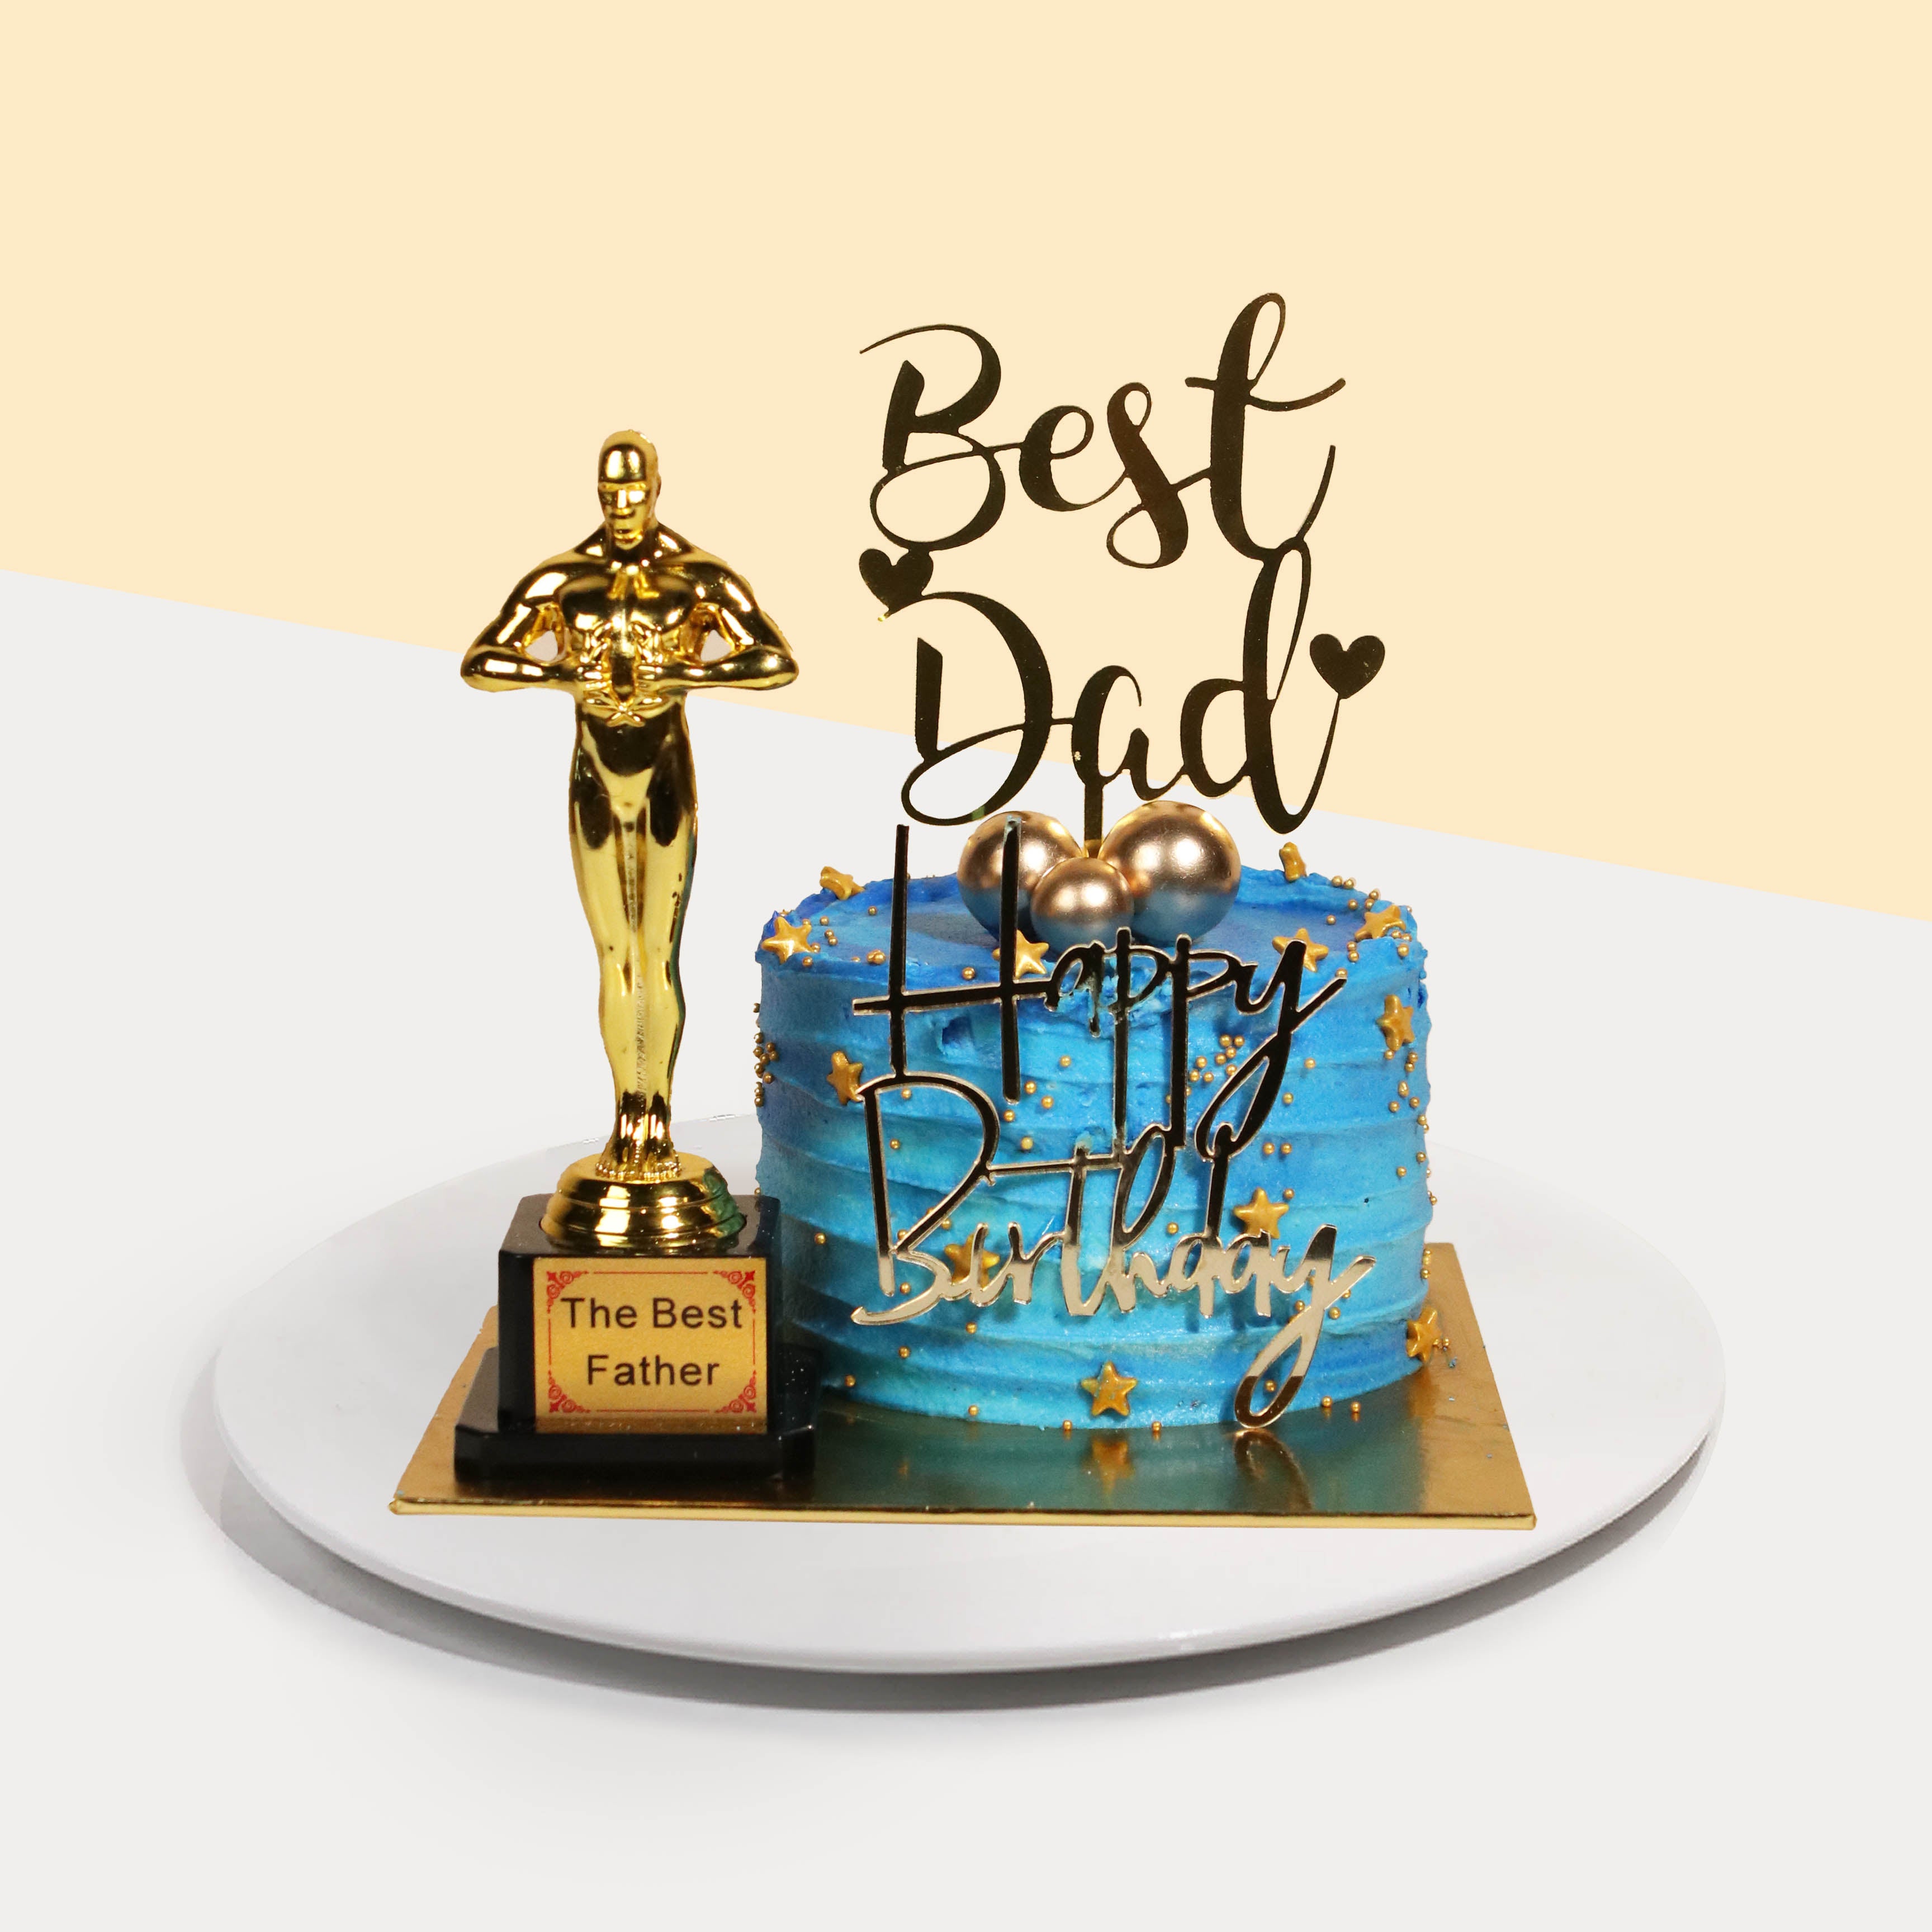 Best Dad cake